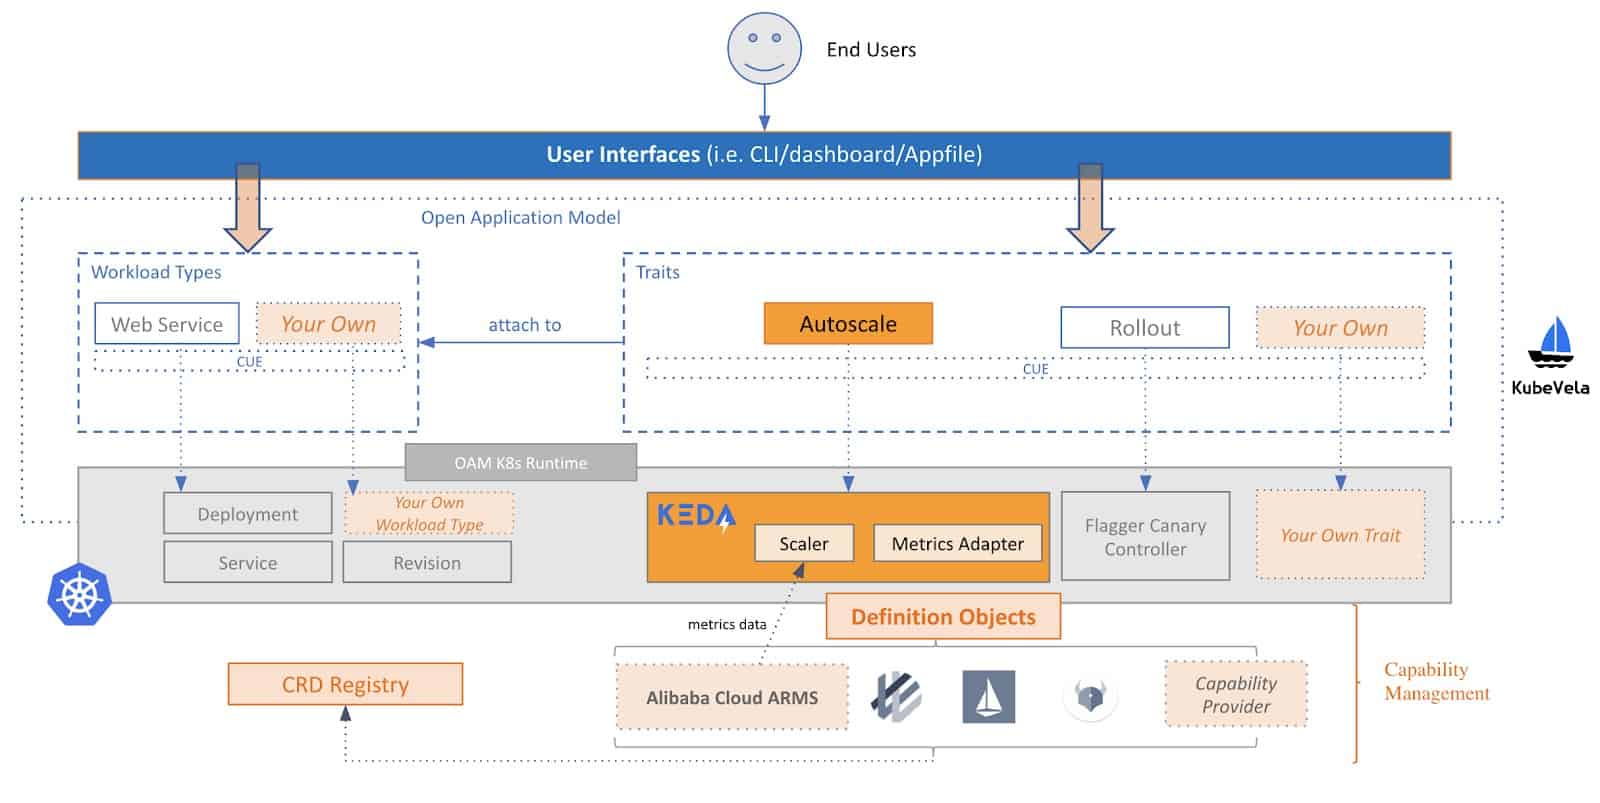 Alibaba Cloud based on OAM/KubeVela and KEDA architecture